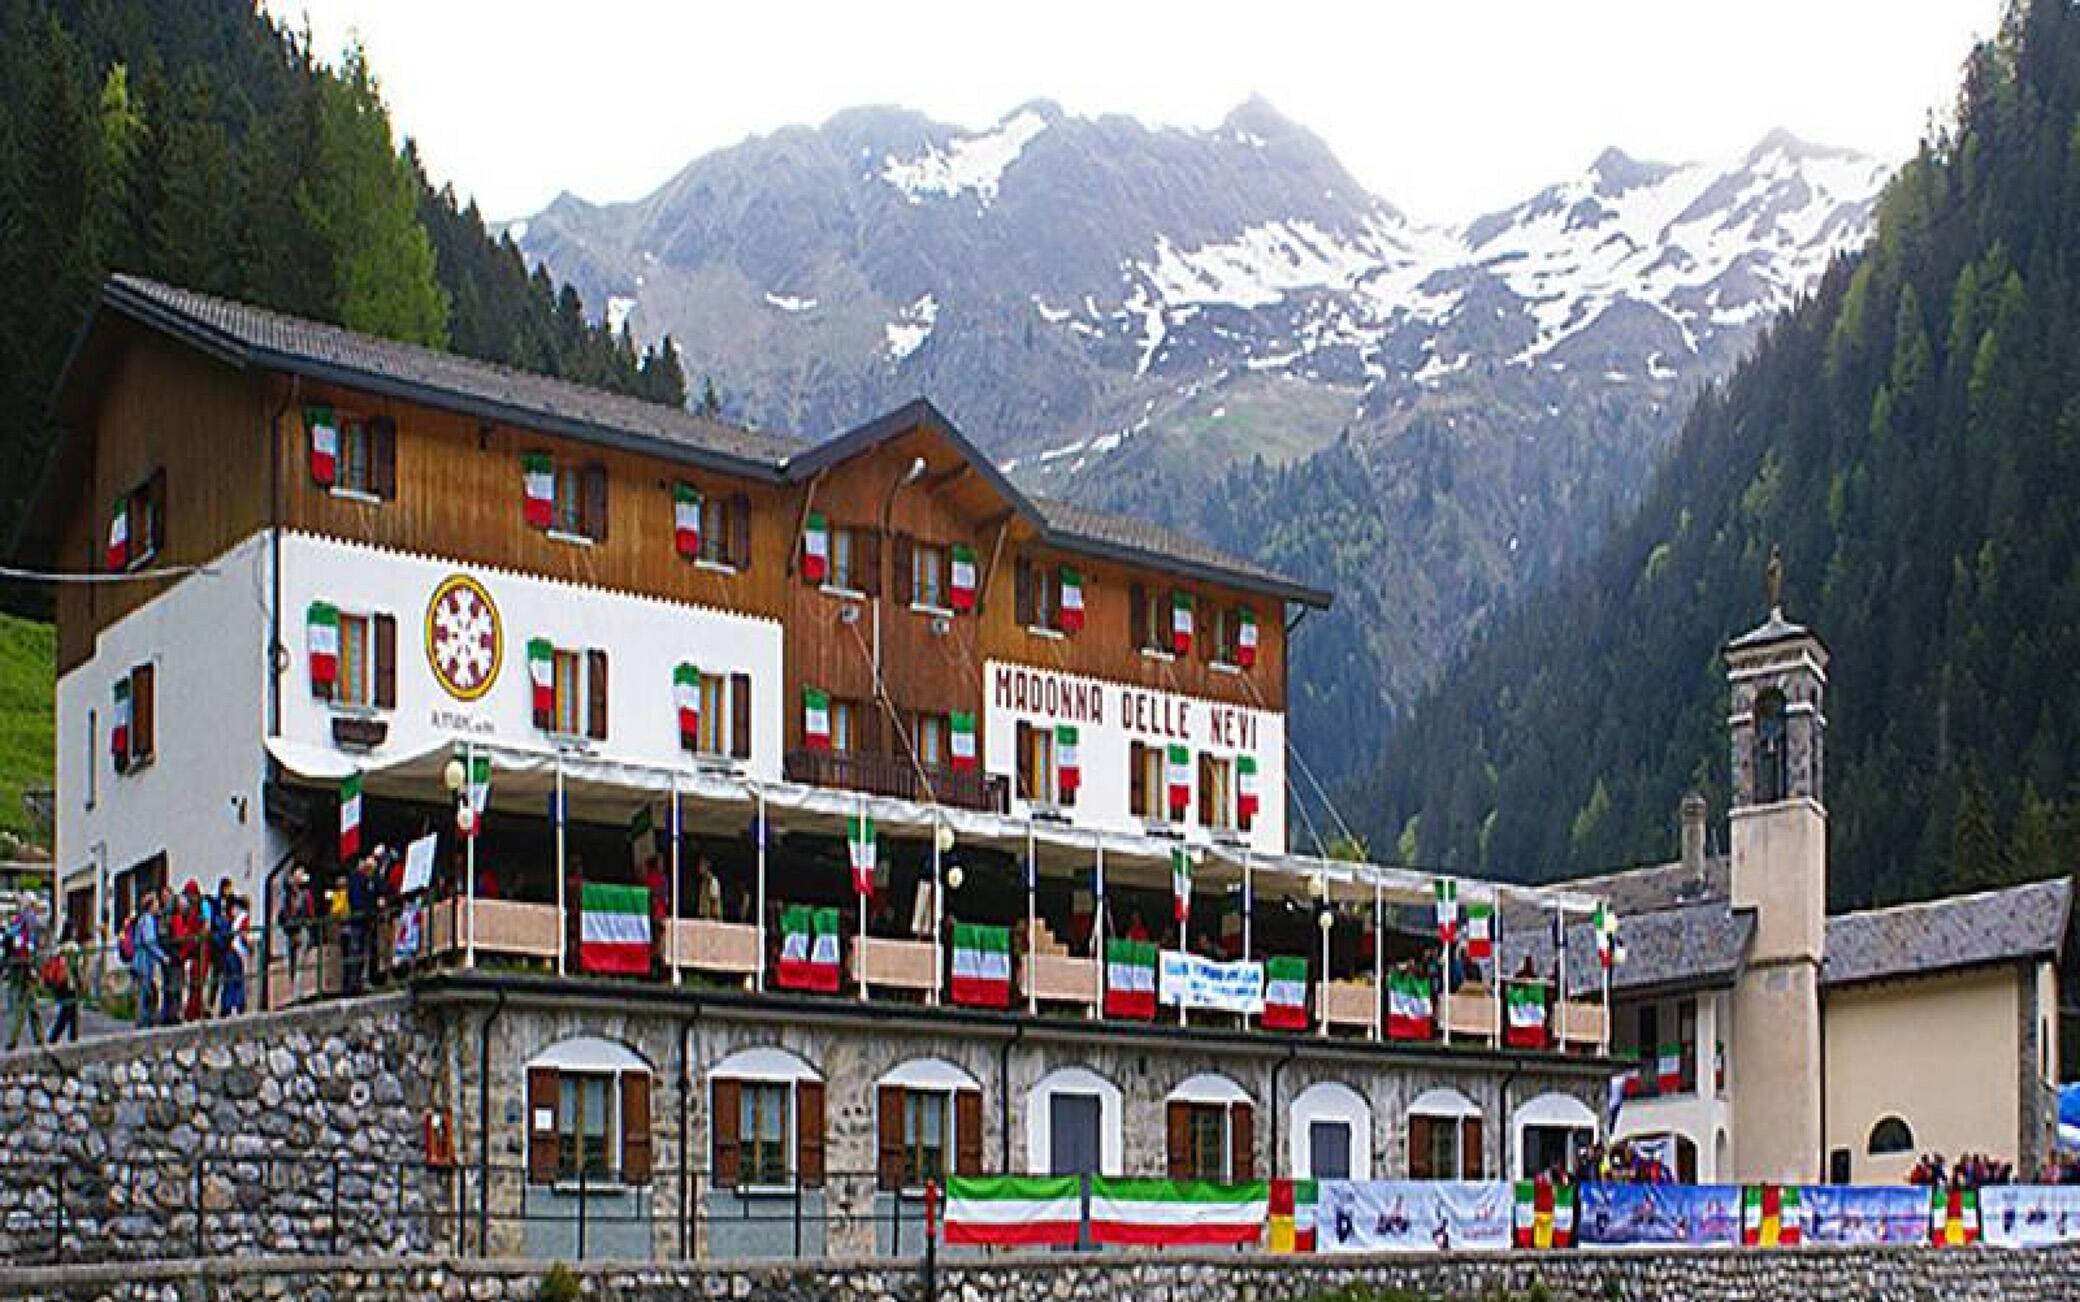 Il rifugio Madonna delle Nevi, in alta Val Brembana, dove 56 persone sono in quarantena a seguito di 7 casi positivi riscontrati ieri tra i vari ospiti Bergamo,  6 agosto 2021. ANSA/TIZIANO MANZONI